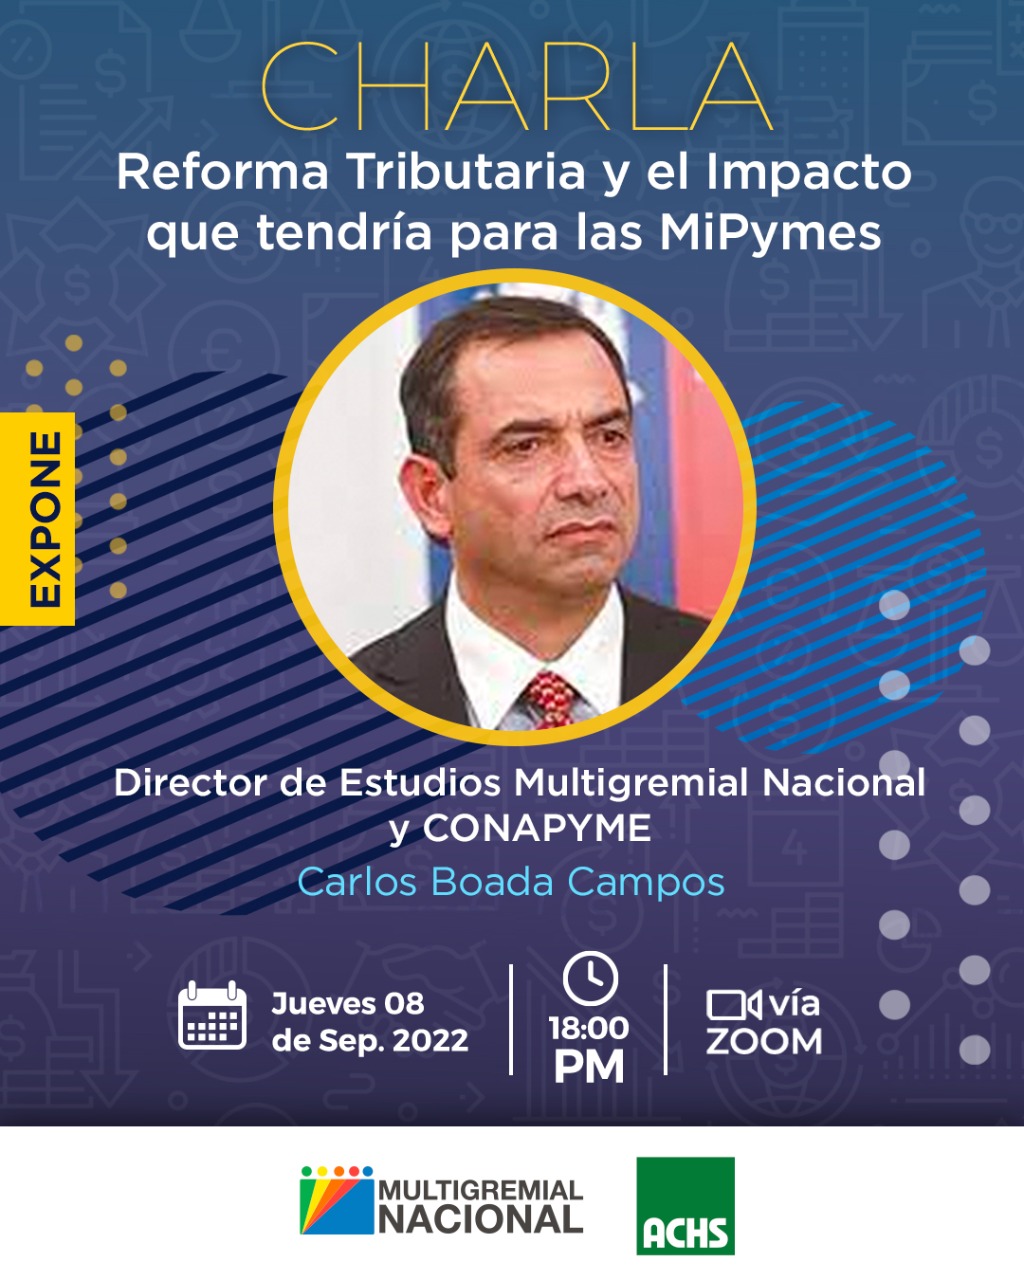 Revive transmisión charla "Reforma Tributaria y el Impacto que tendría para las Mipymes"